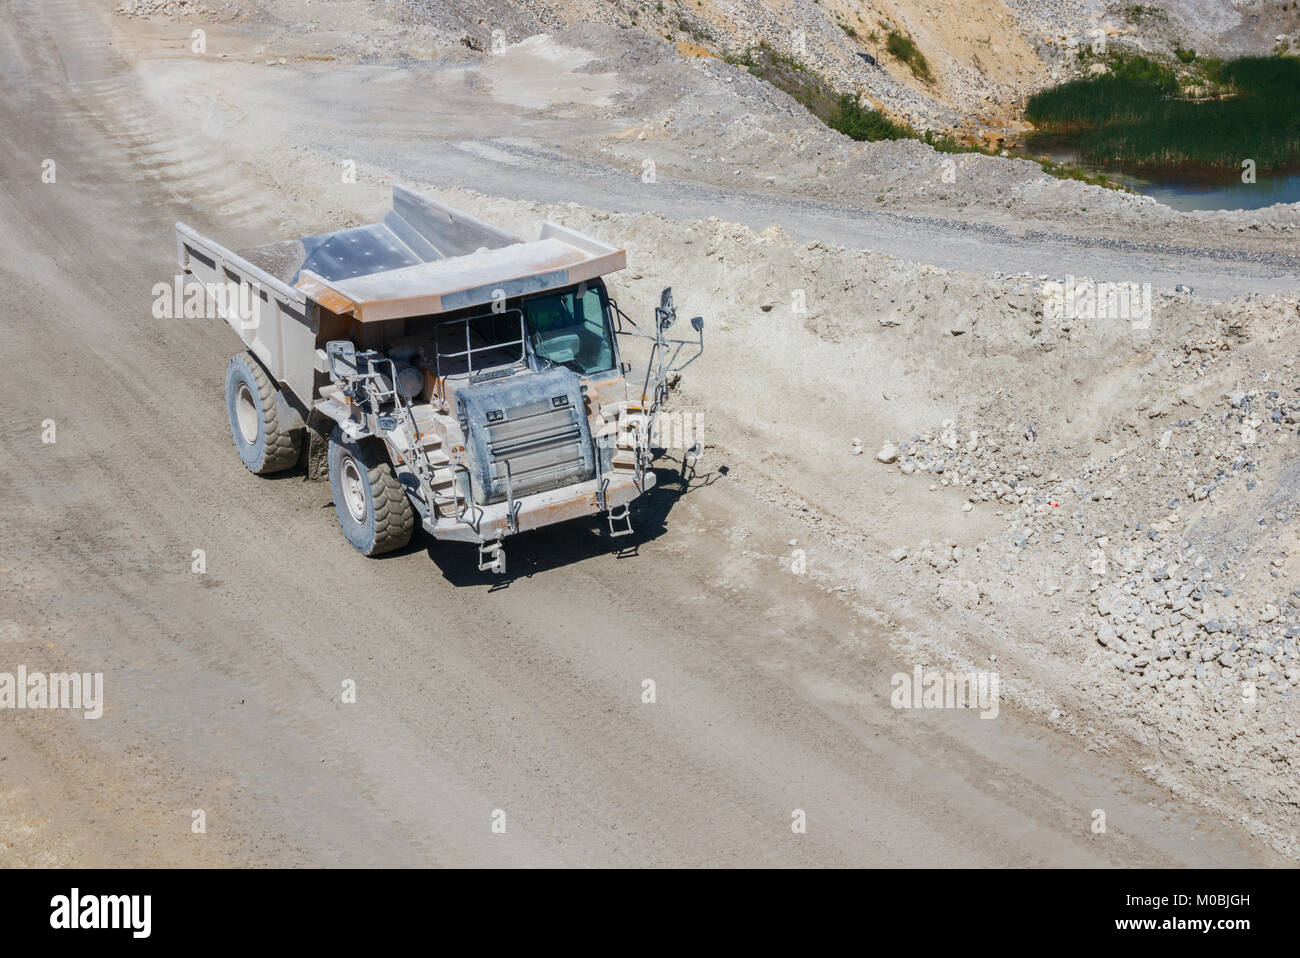 Riesige Dump Truck entlang einem Feldweg fahren bei der ENCI (Erste niederländische Zementindustrie) marl Steinbruch am Mount Saint Peter. Maastricht, Niederlande. Stockfoto